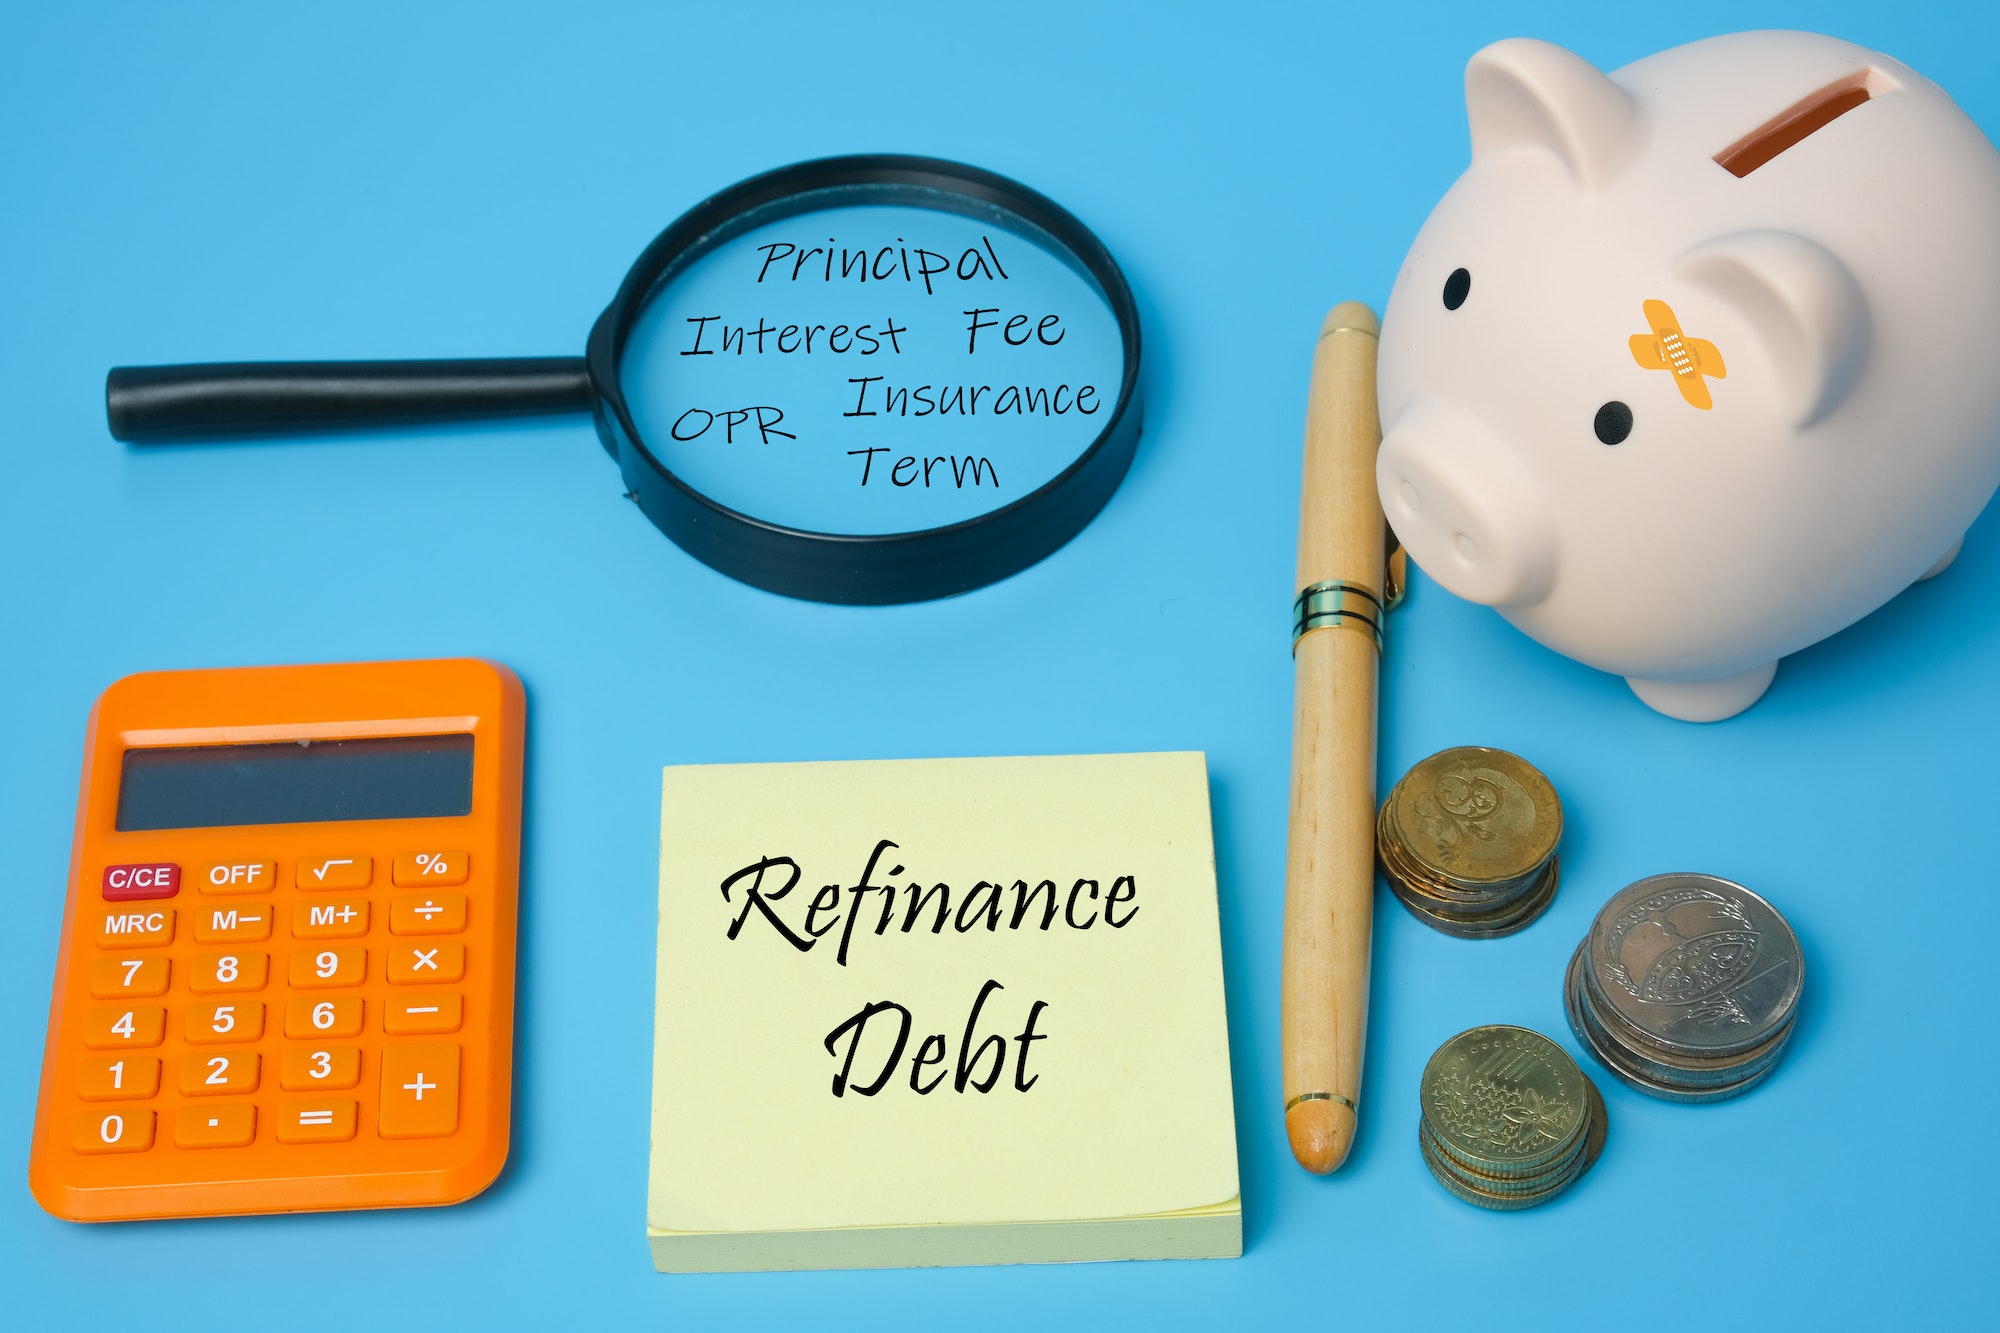 refinance debt